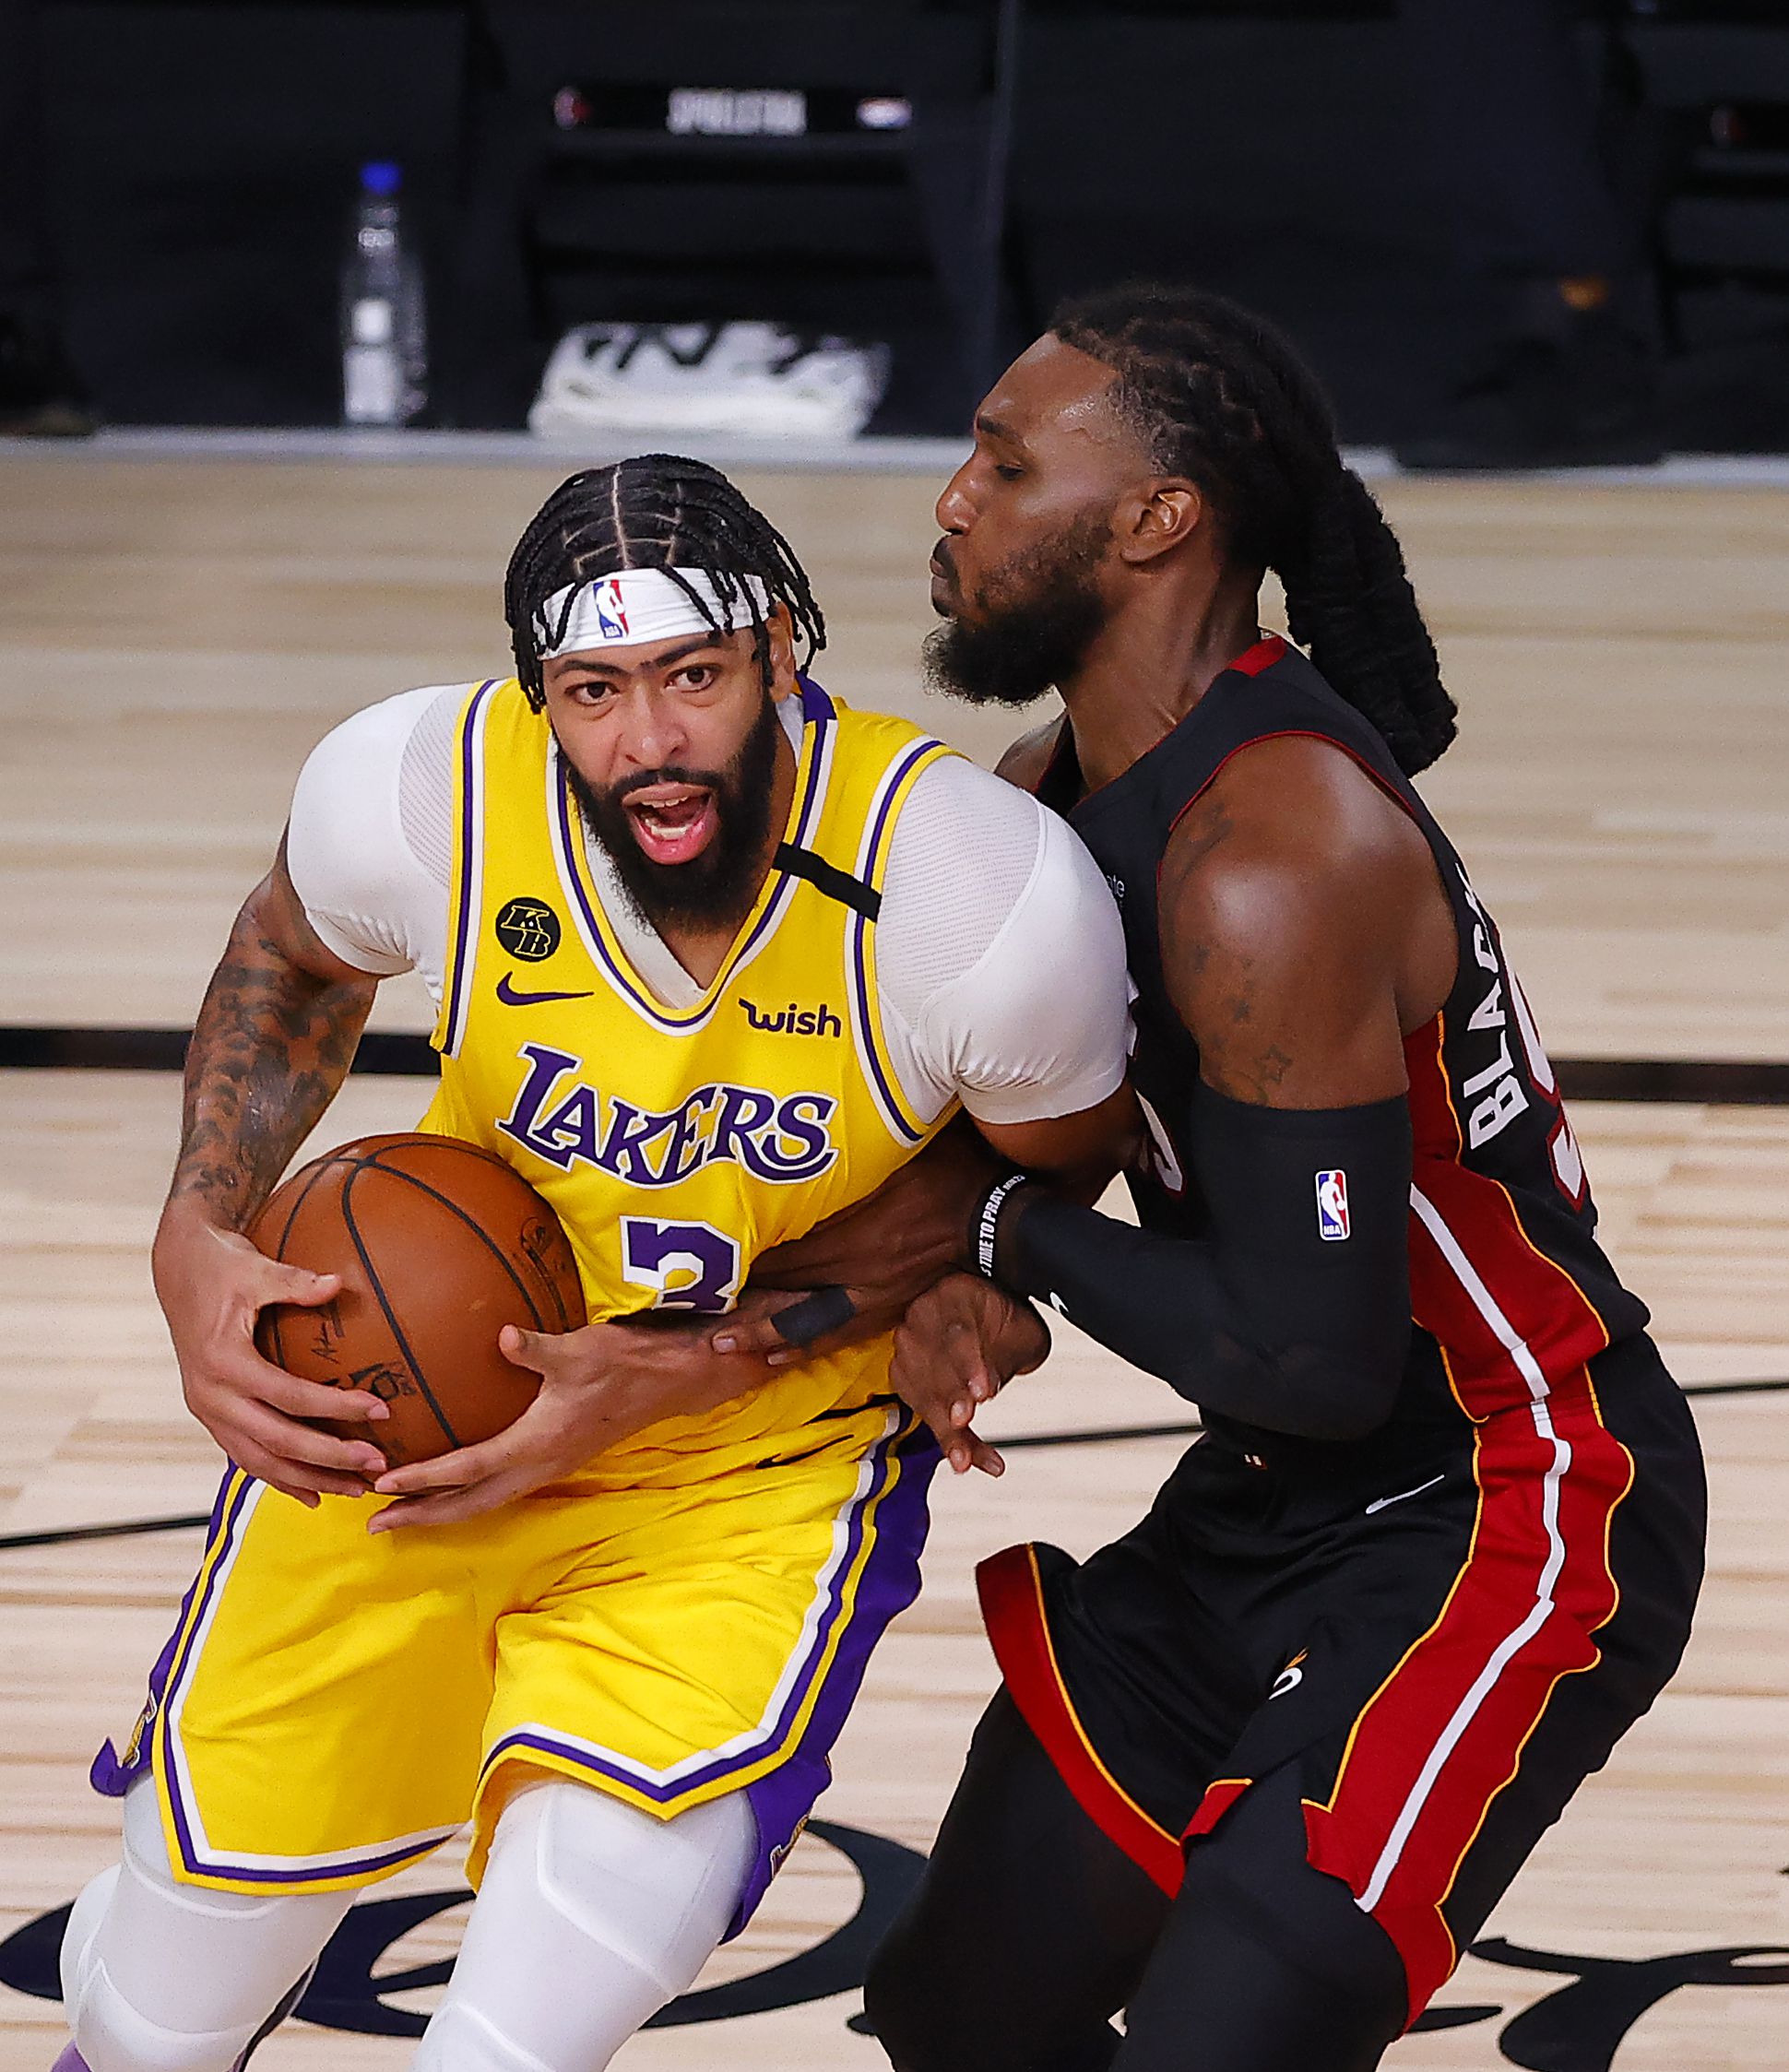 Vezet a Lakers az NBA-döntőben./ Fotó: Gettyimages